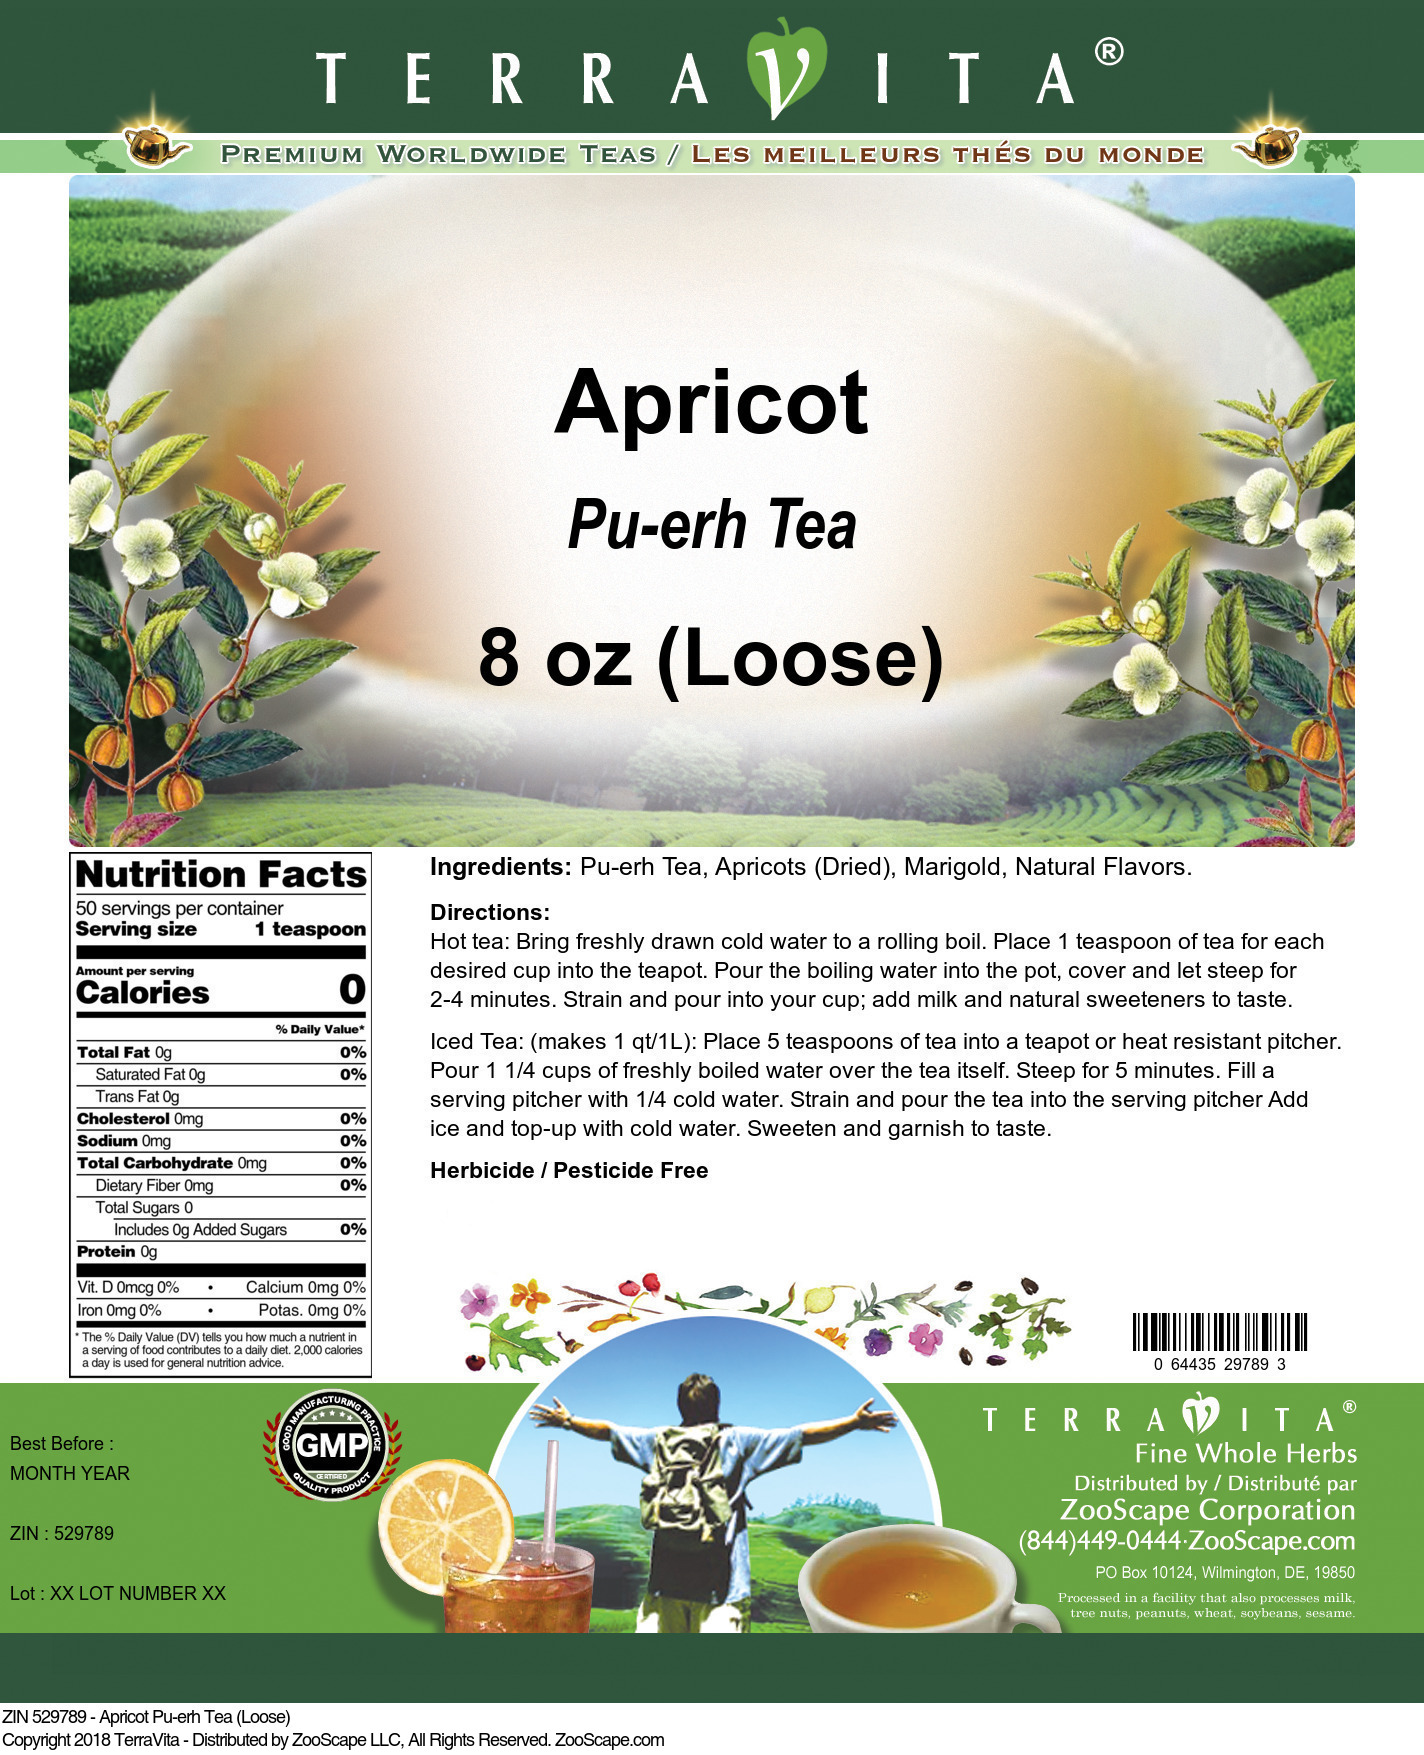 Apricot Pu-erh Tea (Loose) - Label